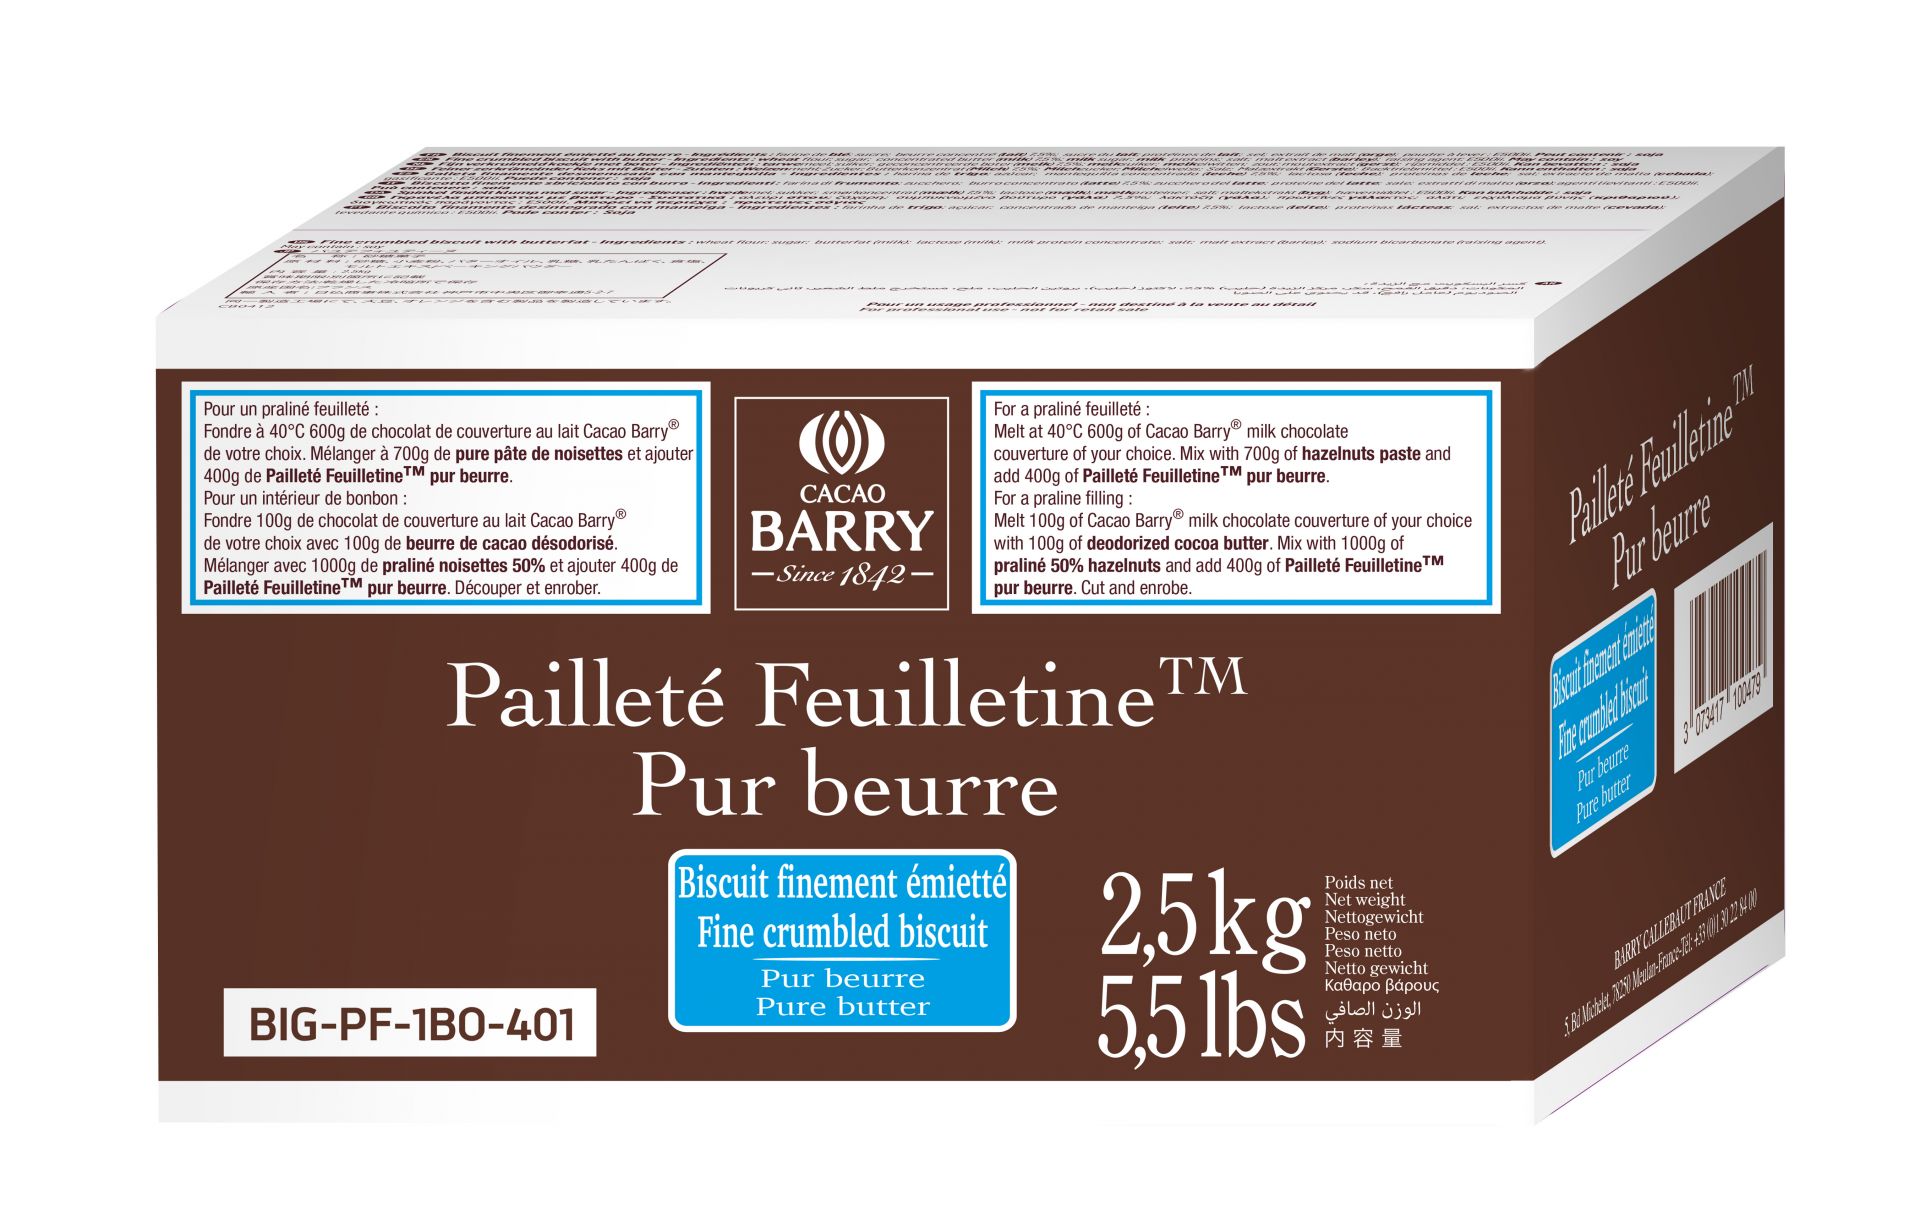 Inclusion - Pailleté Feuilletine™ - pieces of crispy Brittany crepe - 2.5kg bag (1)